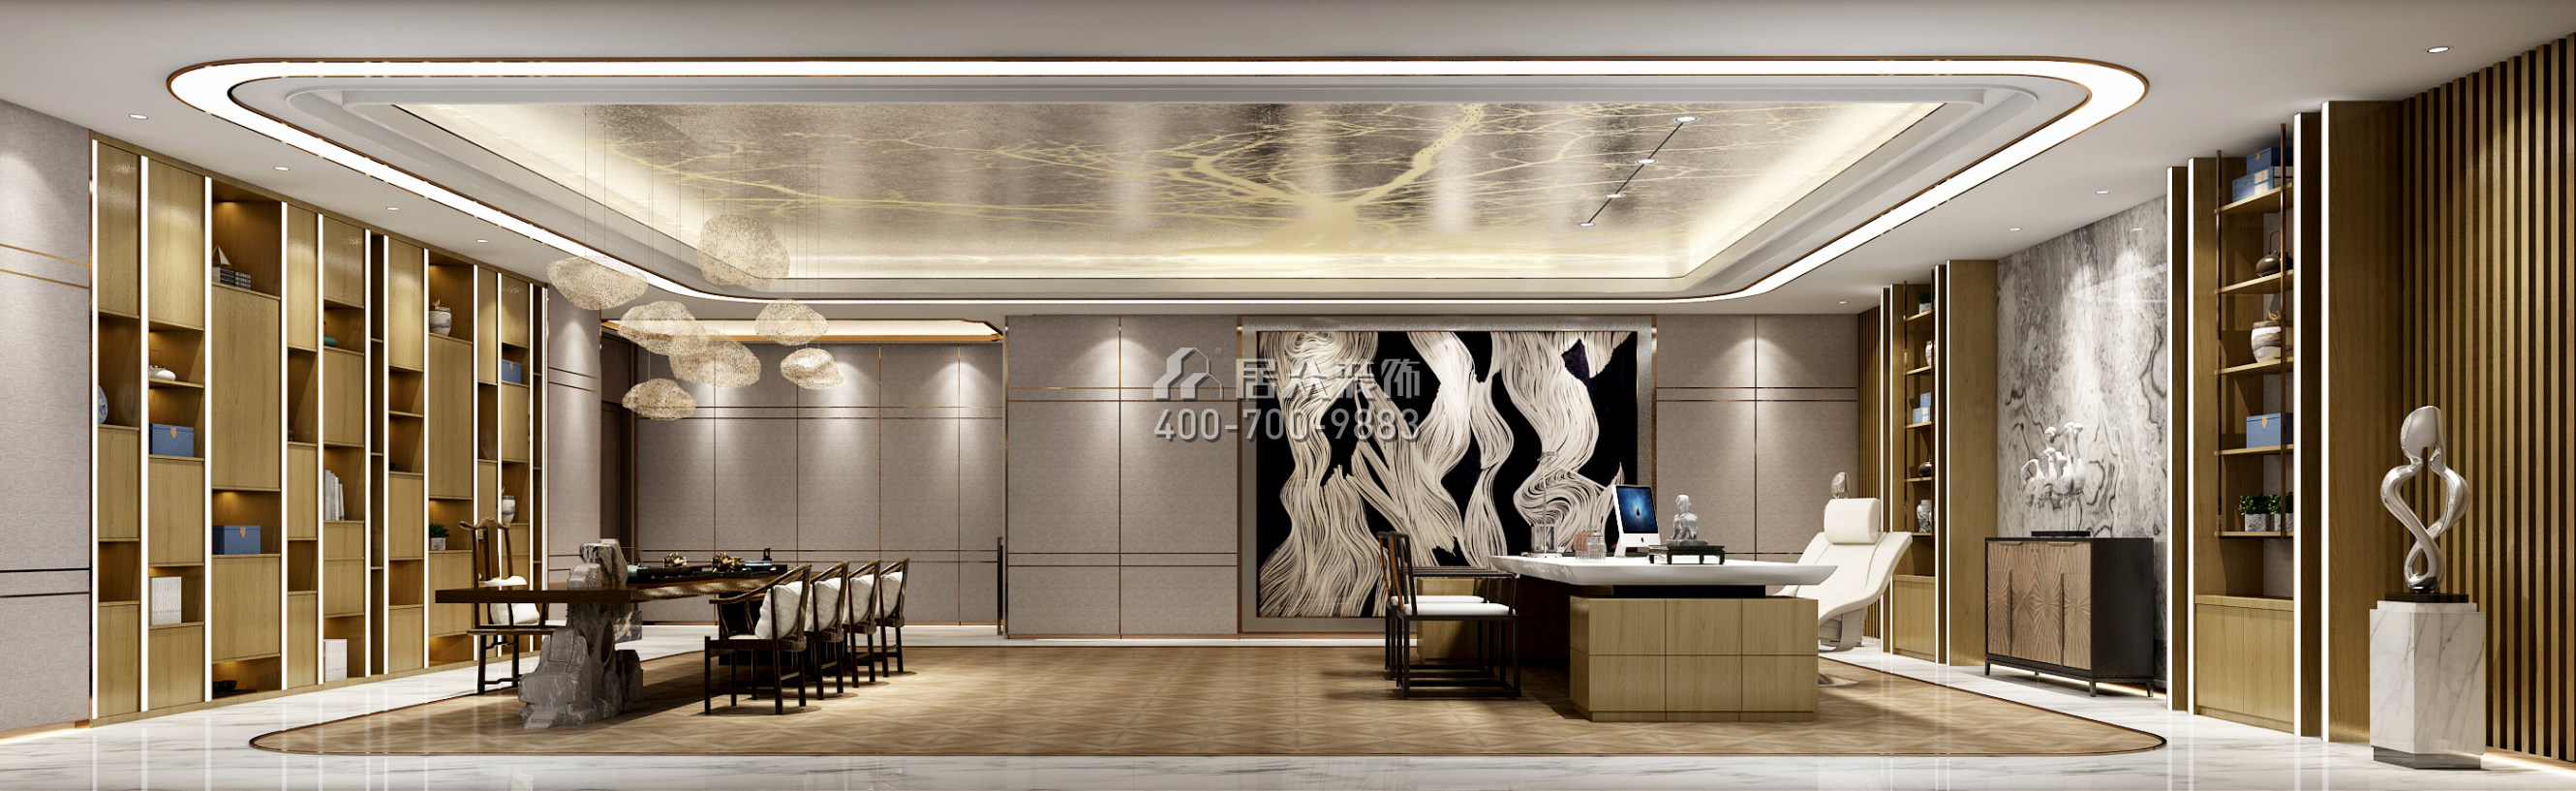 東寶路2000平方米現代簡約風格公裝（已棄用）戶型客廳裝修效果圖